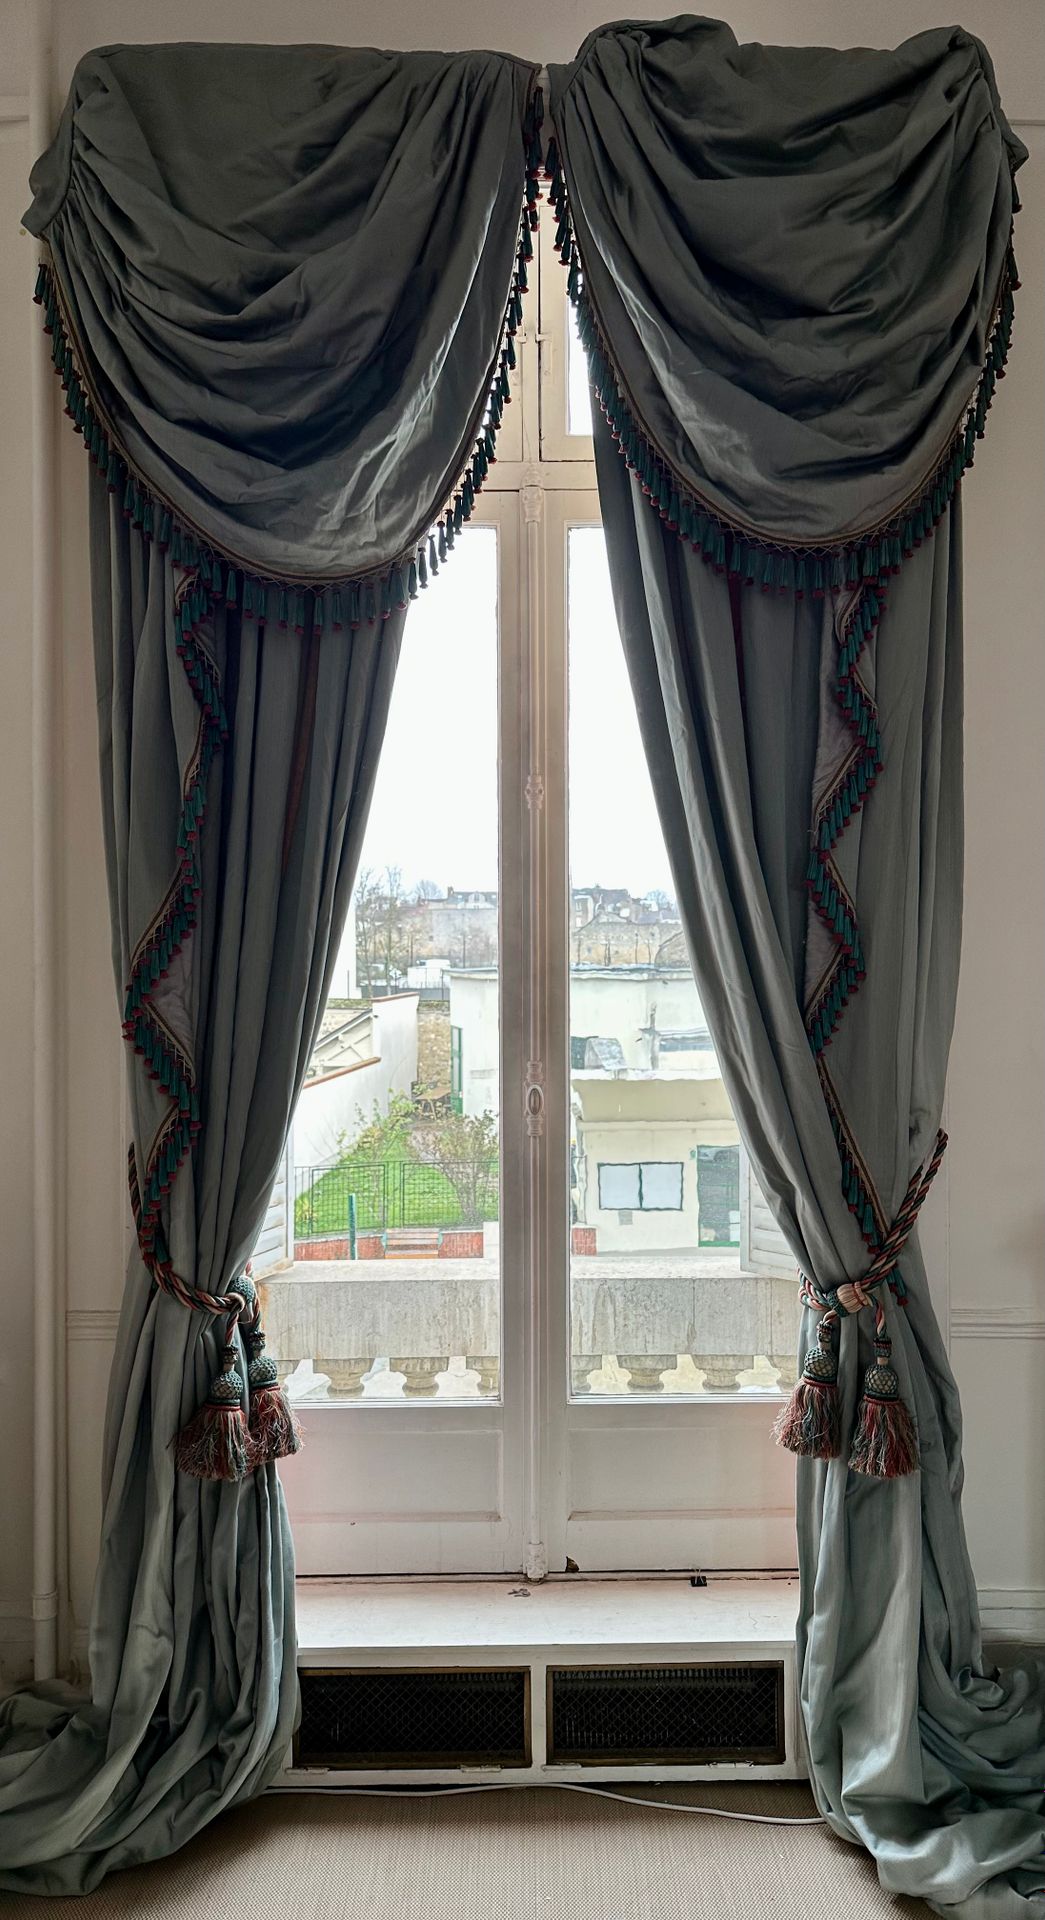 Null 五对浅蓝色棉质和丝质窗帘，带装饰。
20世纪
约400 x 285厘米
(使用状态)

出处: 
巴黎第十六区私人豪宅